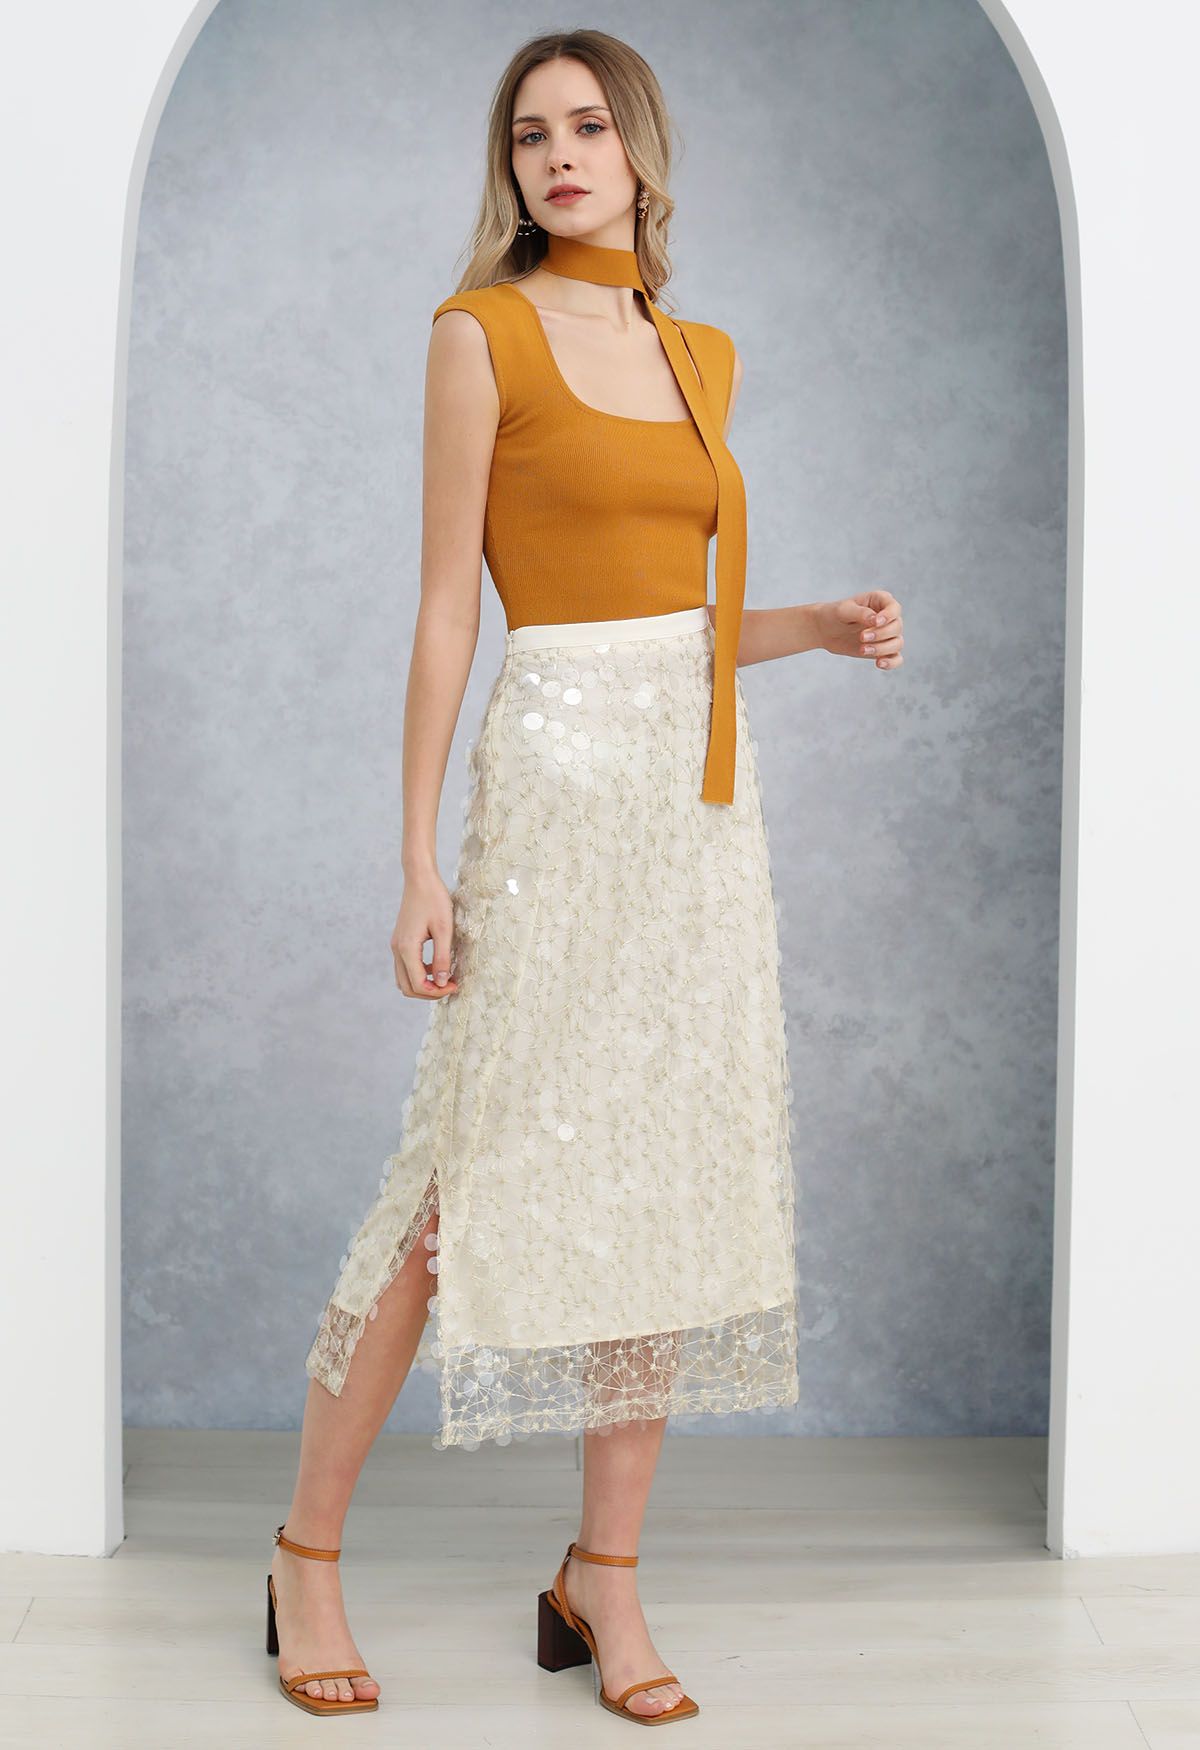 Falda de malla bordada con lentejuelas brillantes en color crema